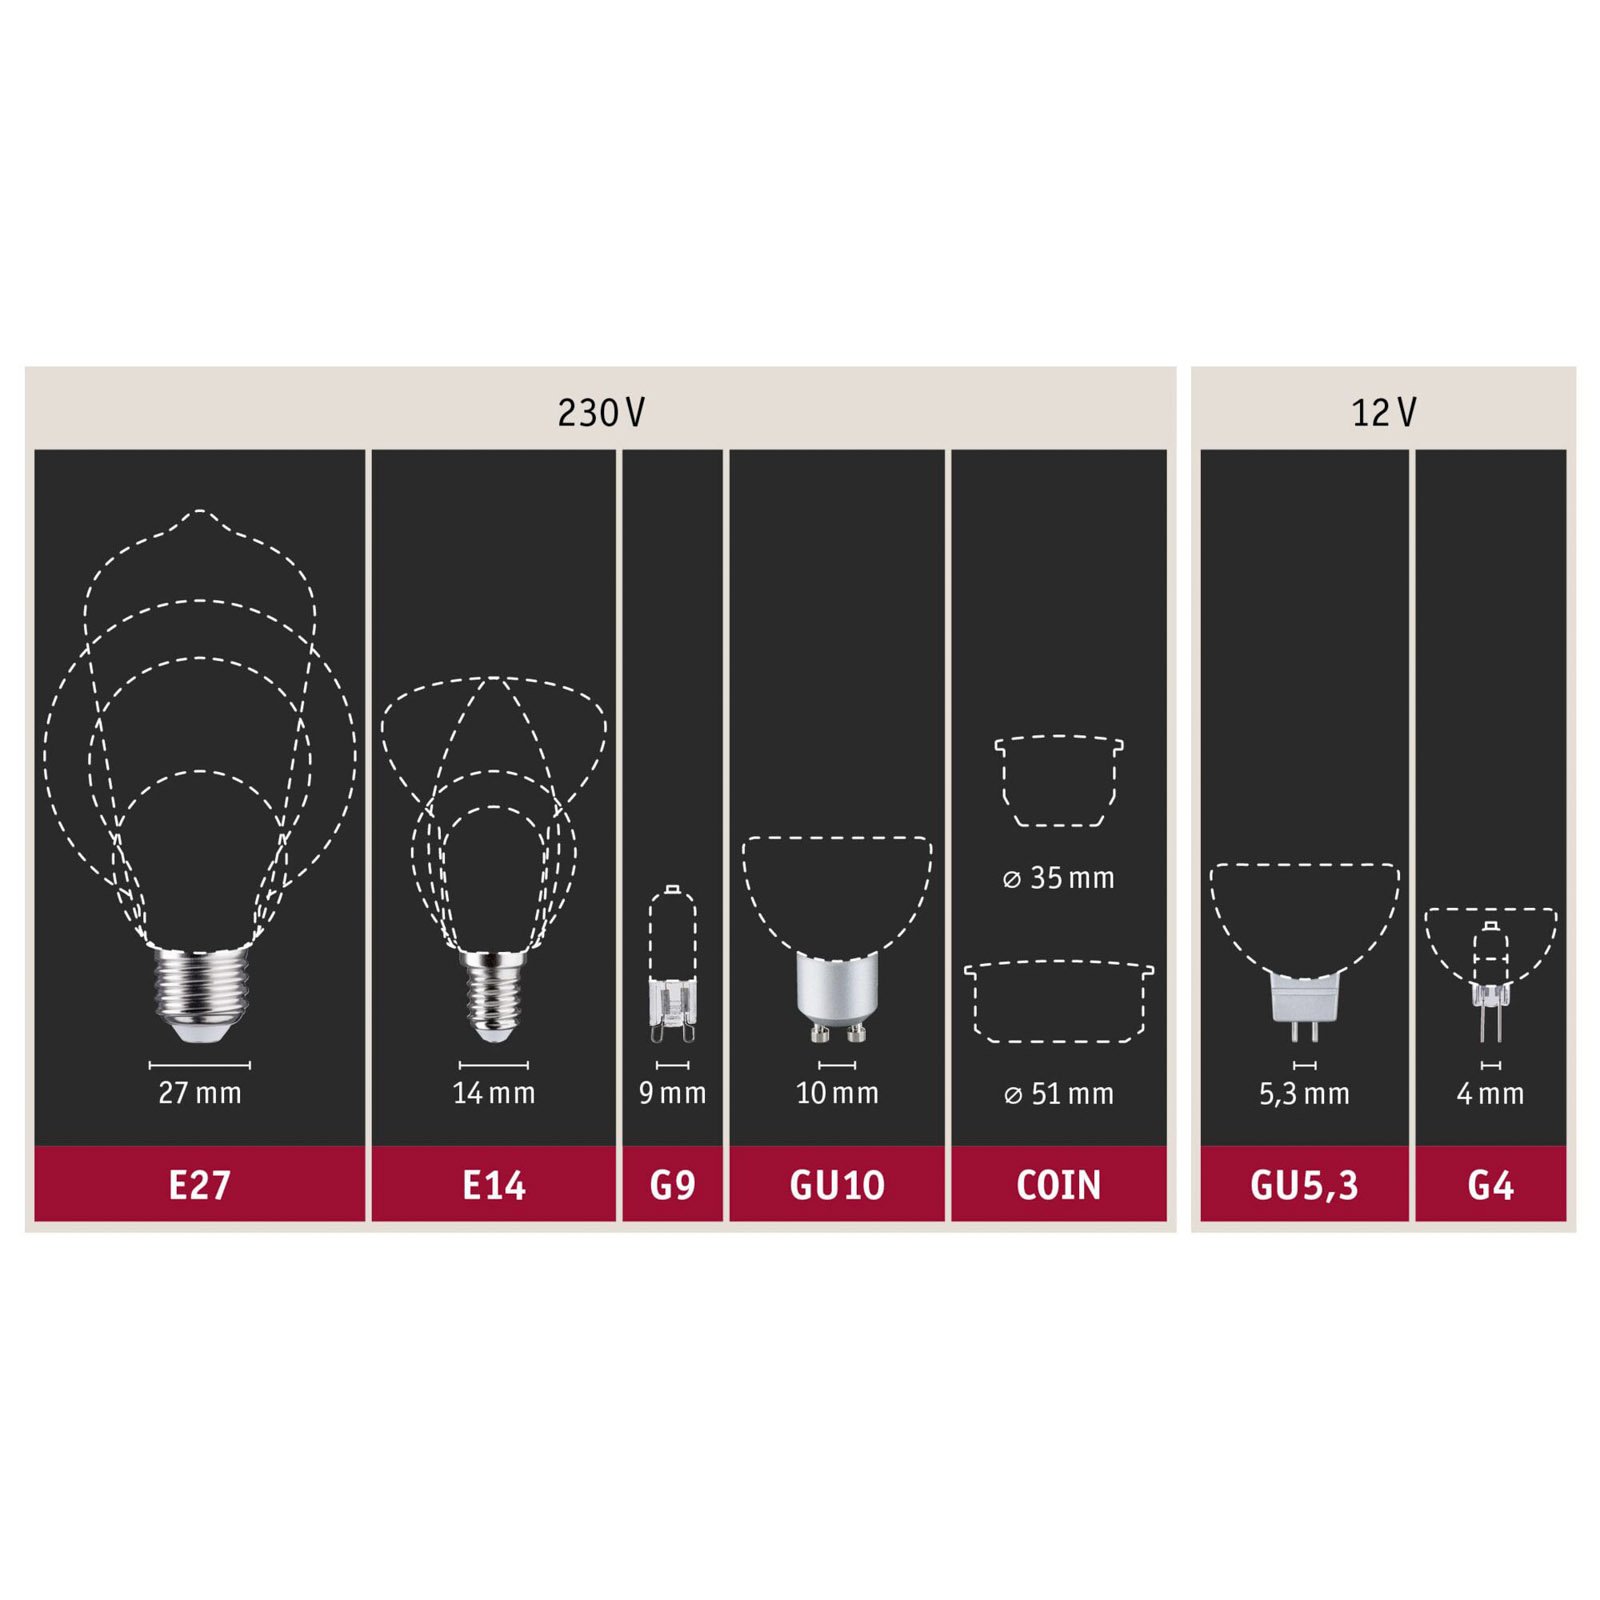 Ampoule LED à filament E27 5W 2.700K claire à intensité variable